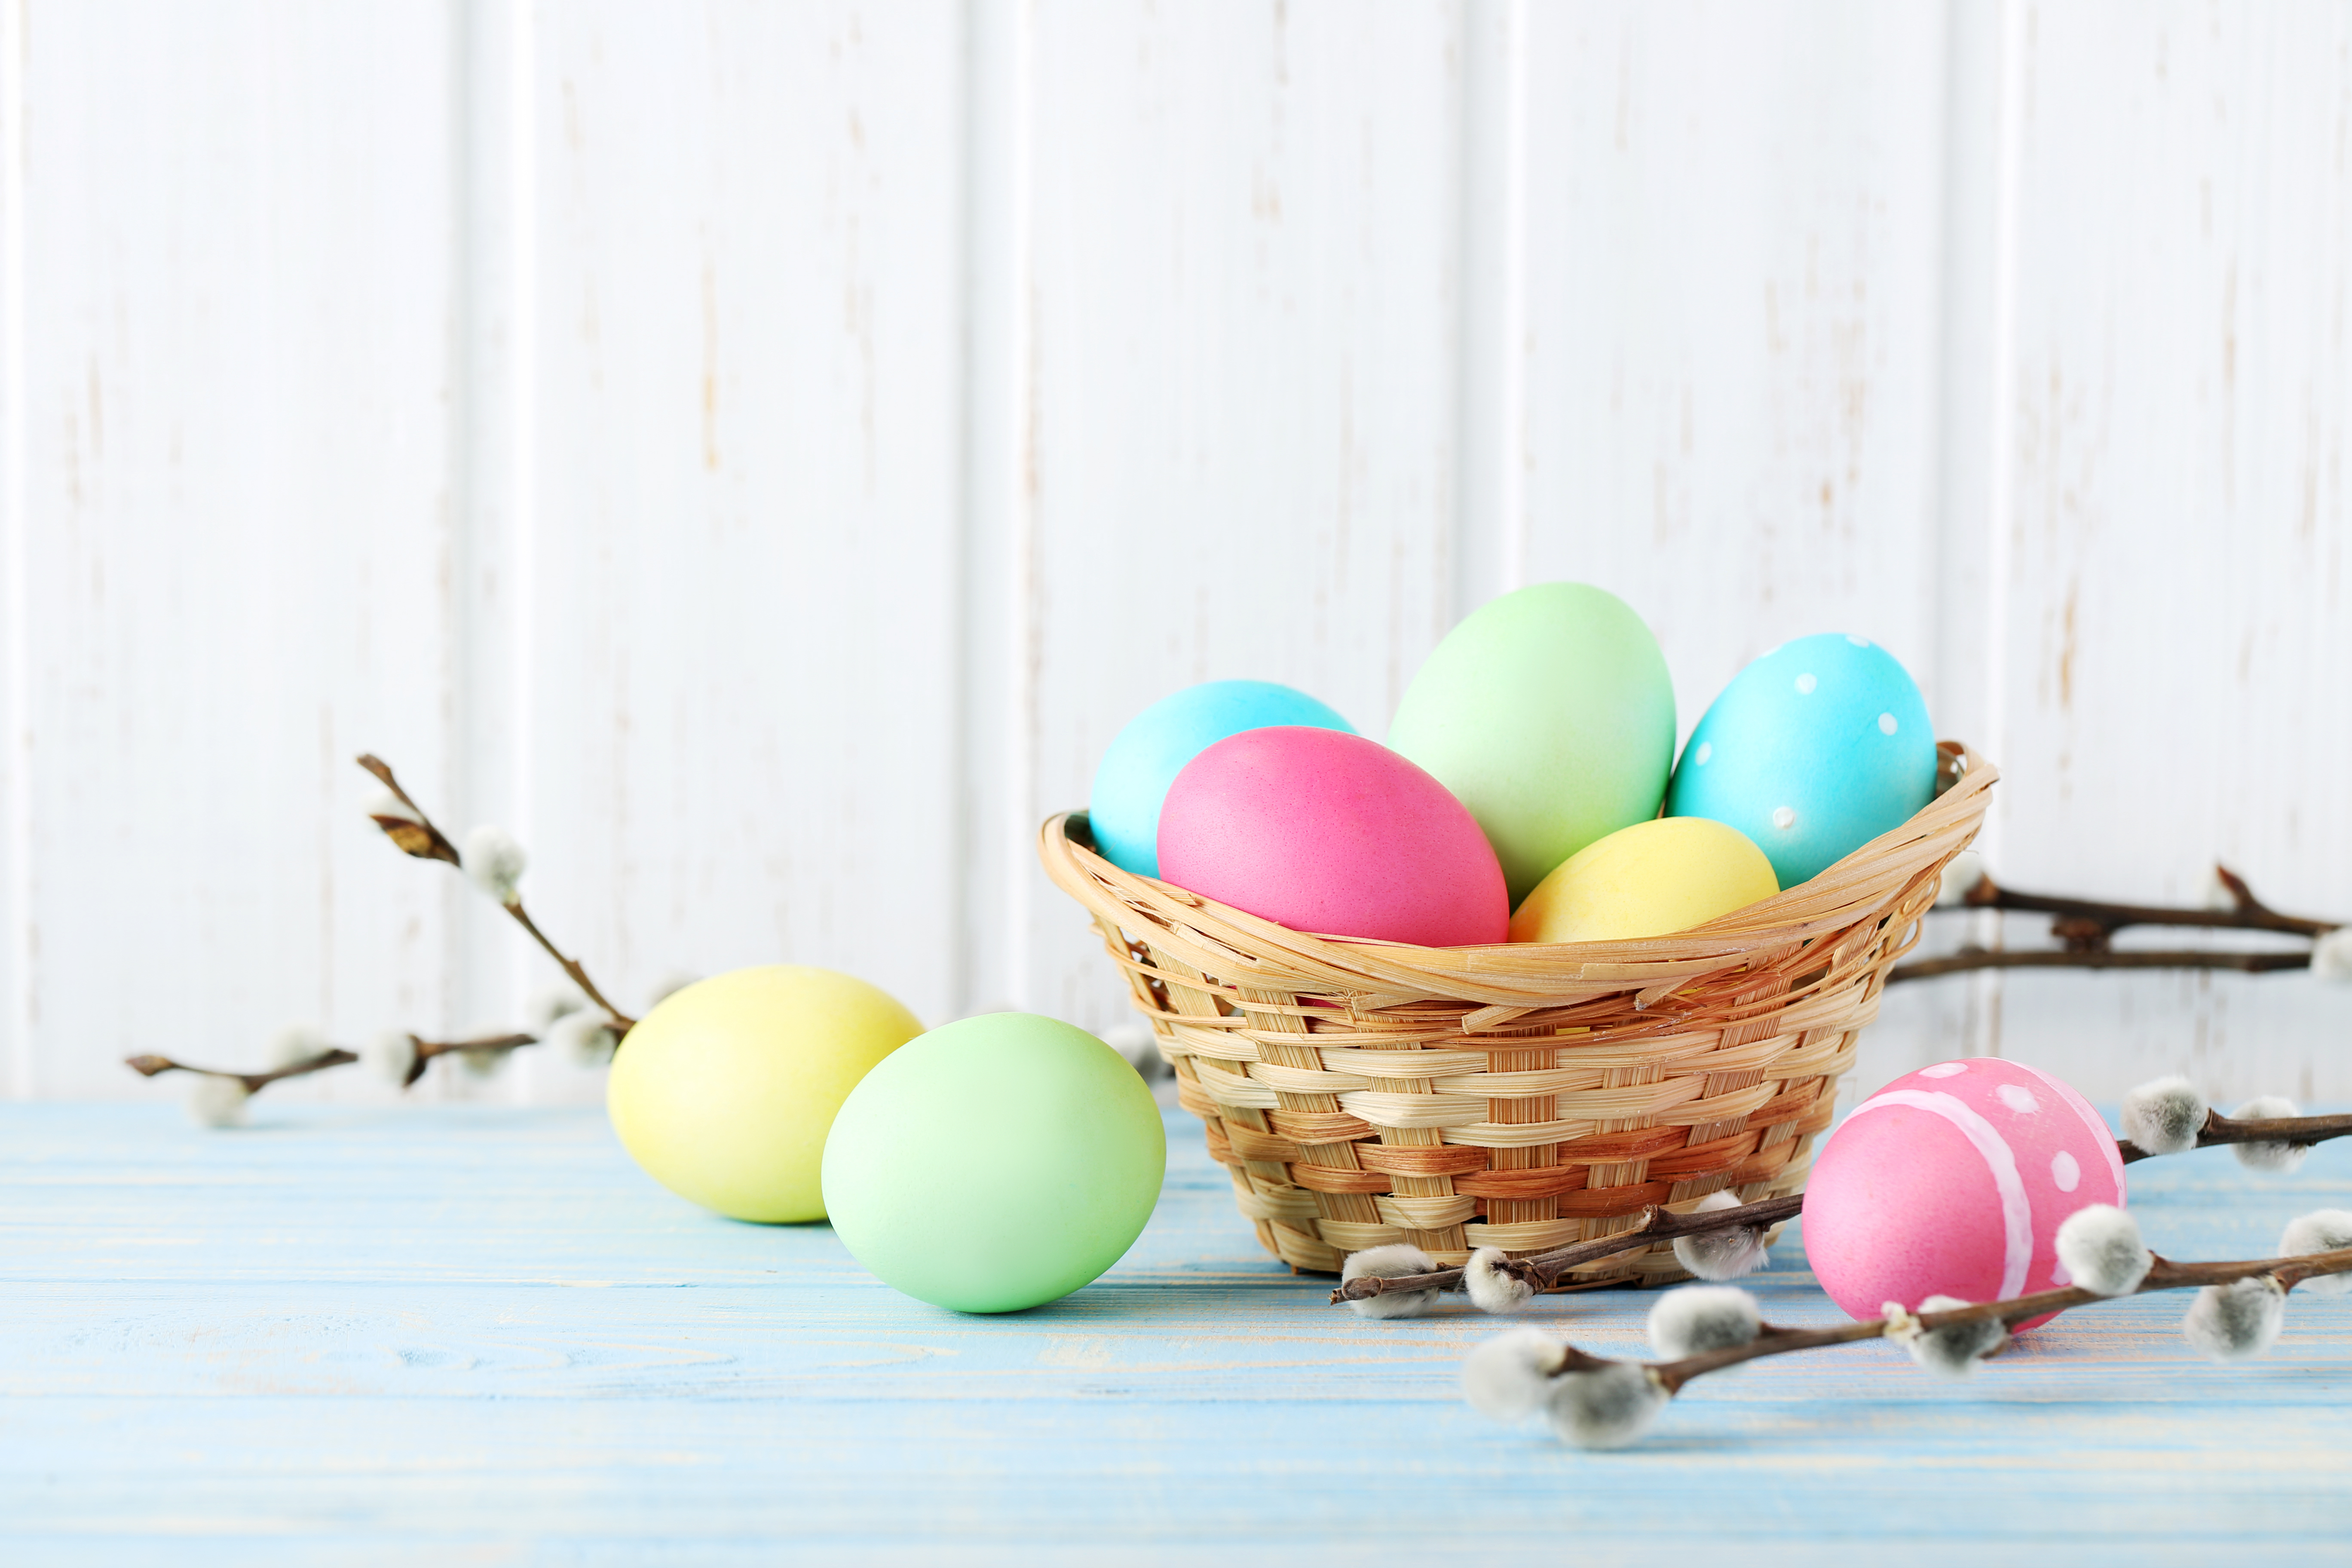 Come decorare le uova di Pasqua con i bambini - TipiTipi Magazine